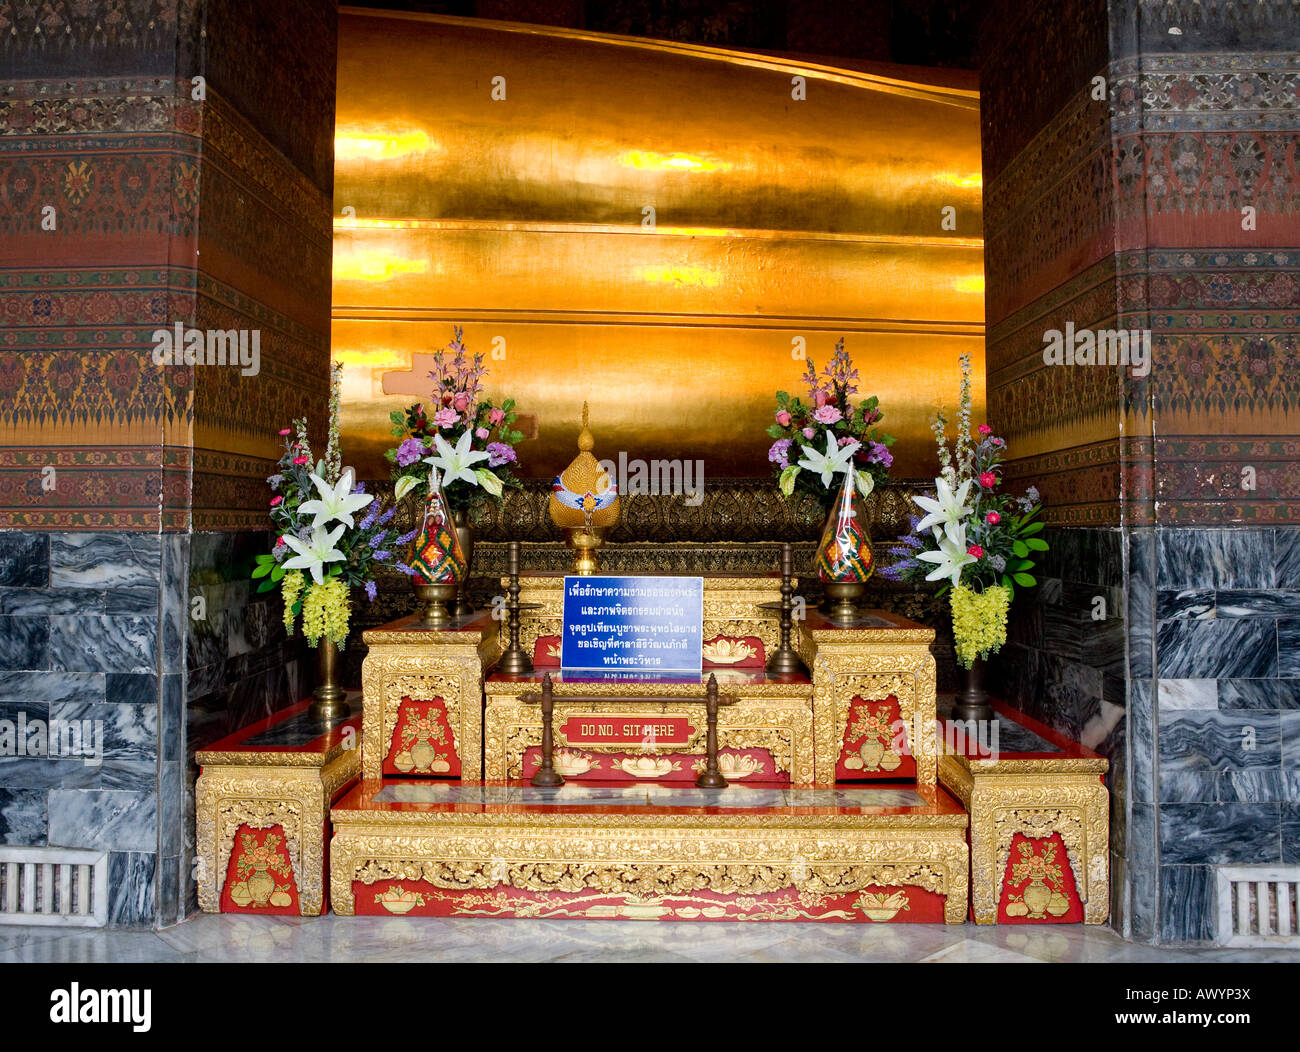 Culte avec des prières et des offrandes devant l'immense Bouddha couché de Wat Po Bangkok Thailande Asie du sud-est Banque D'Images